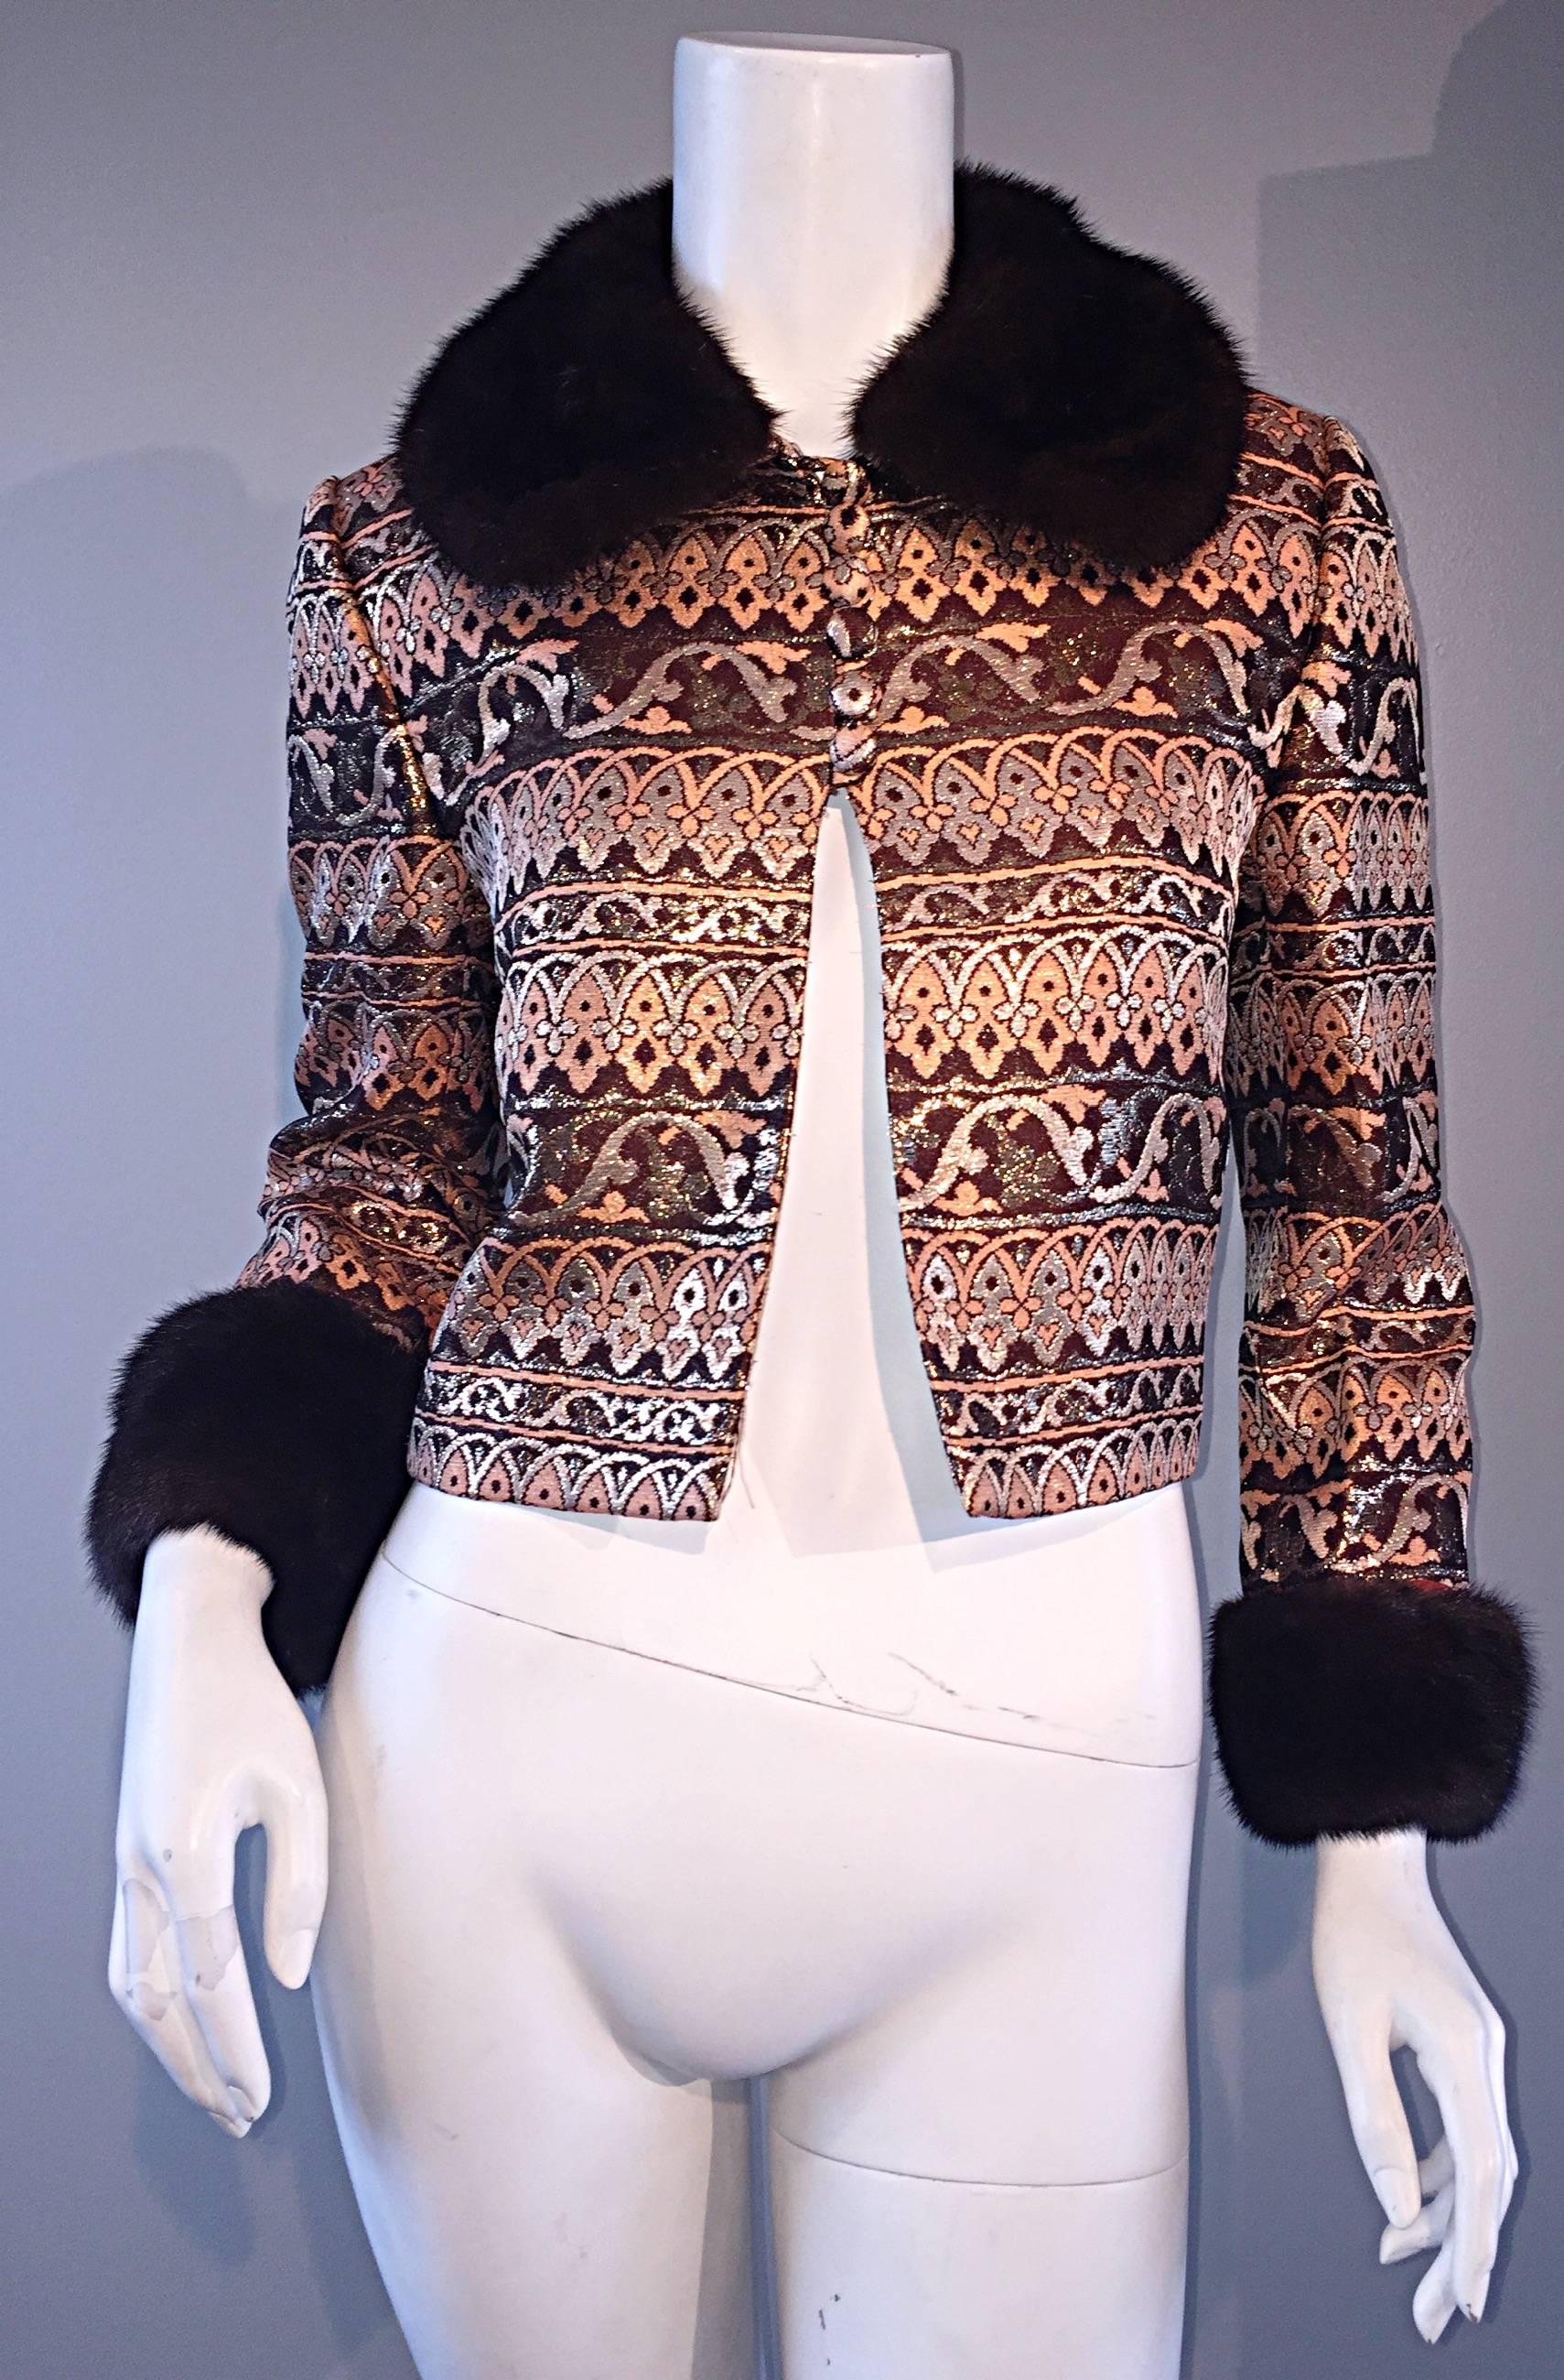 Amazing Early Adele Simpson 1960s 60s Metallic Brocade Dress & Mink Fur Jacket 1